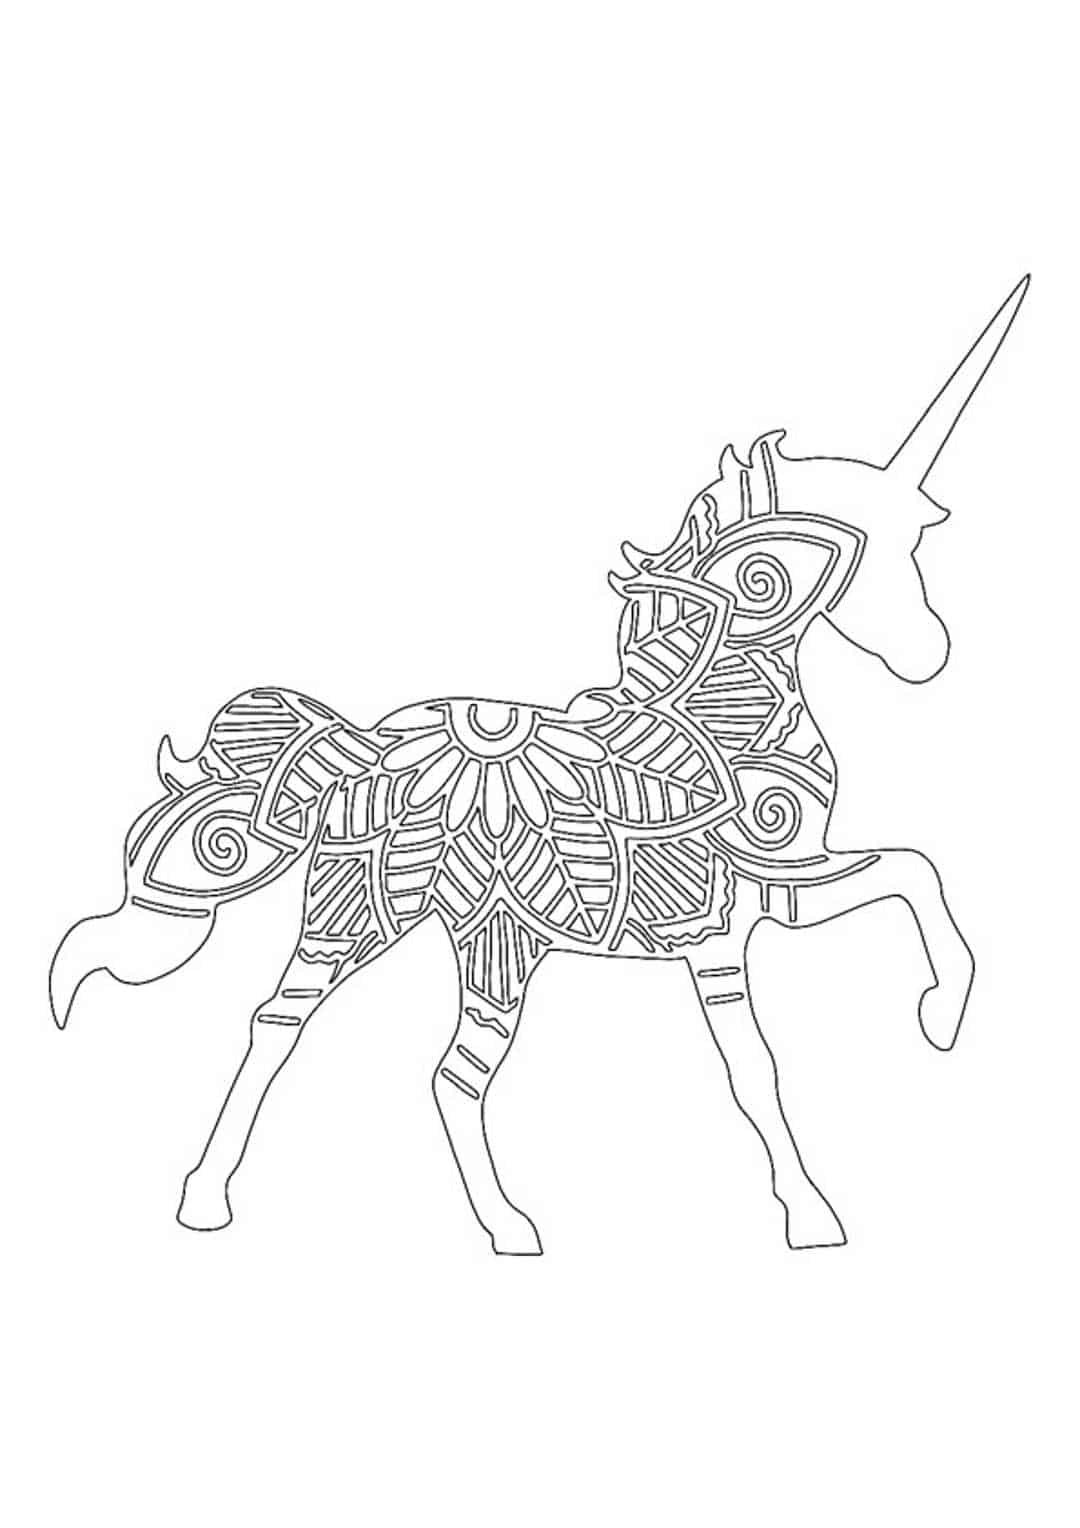 Unicorn mandala coloring page